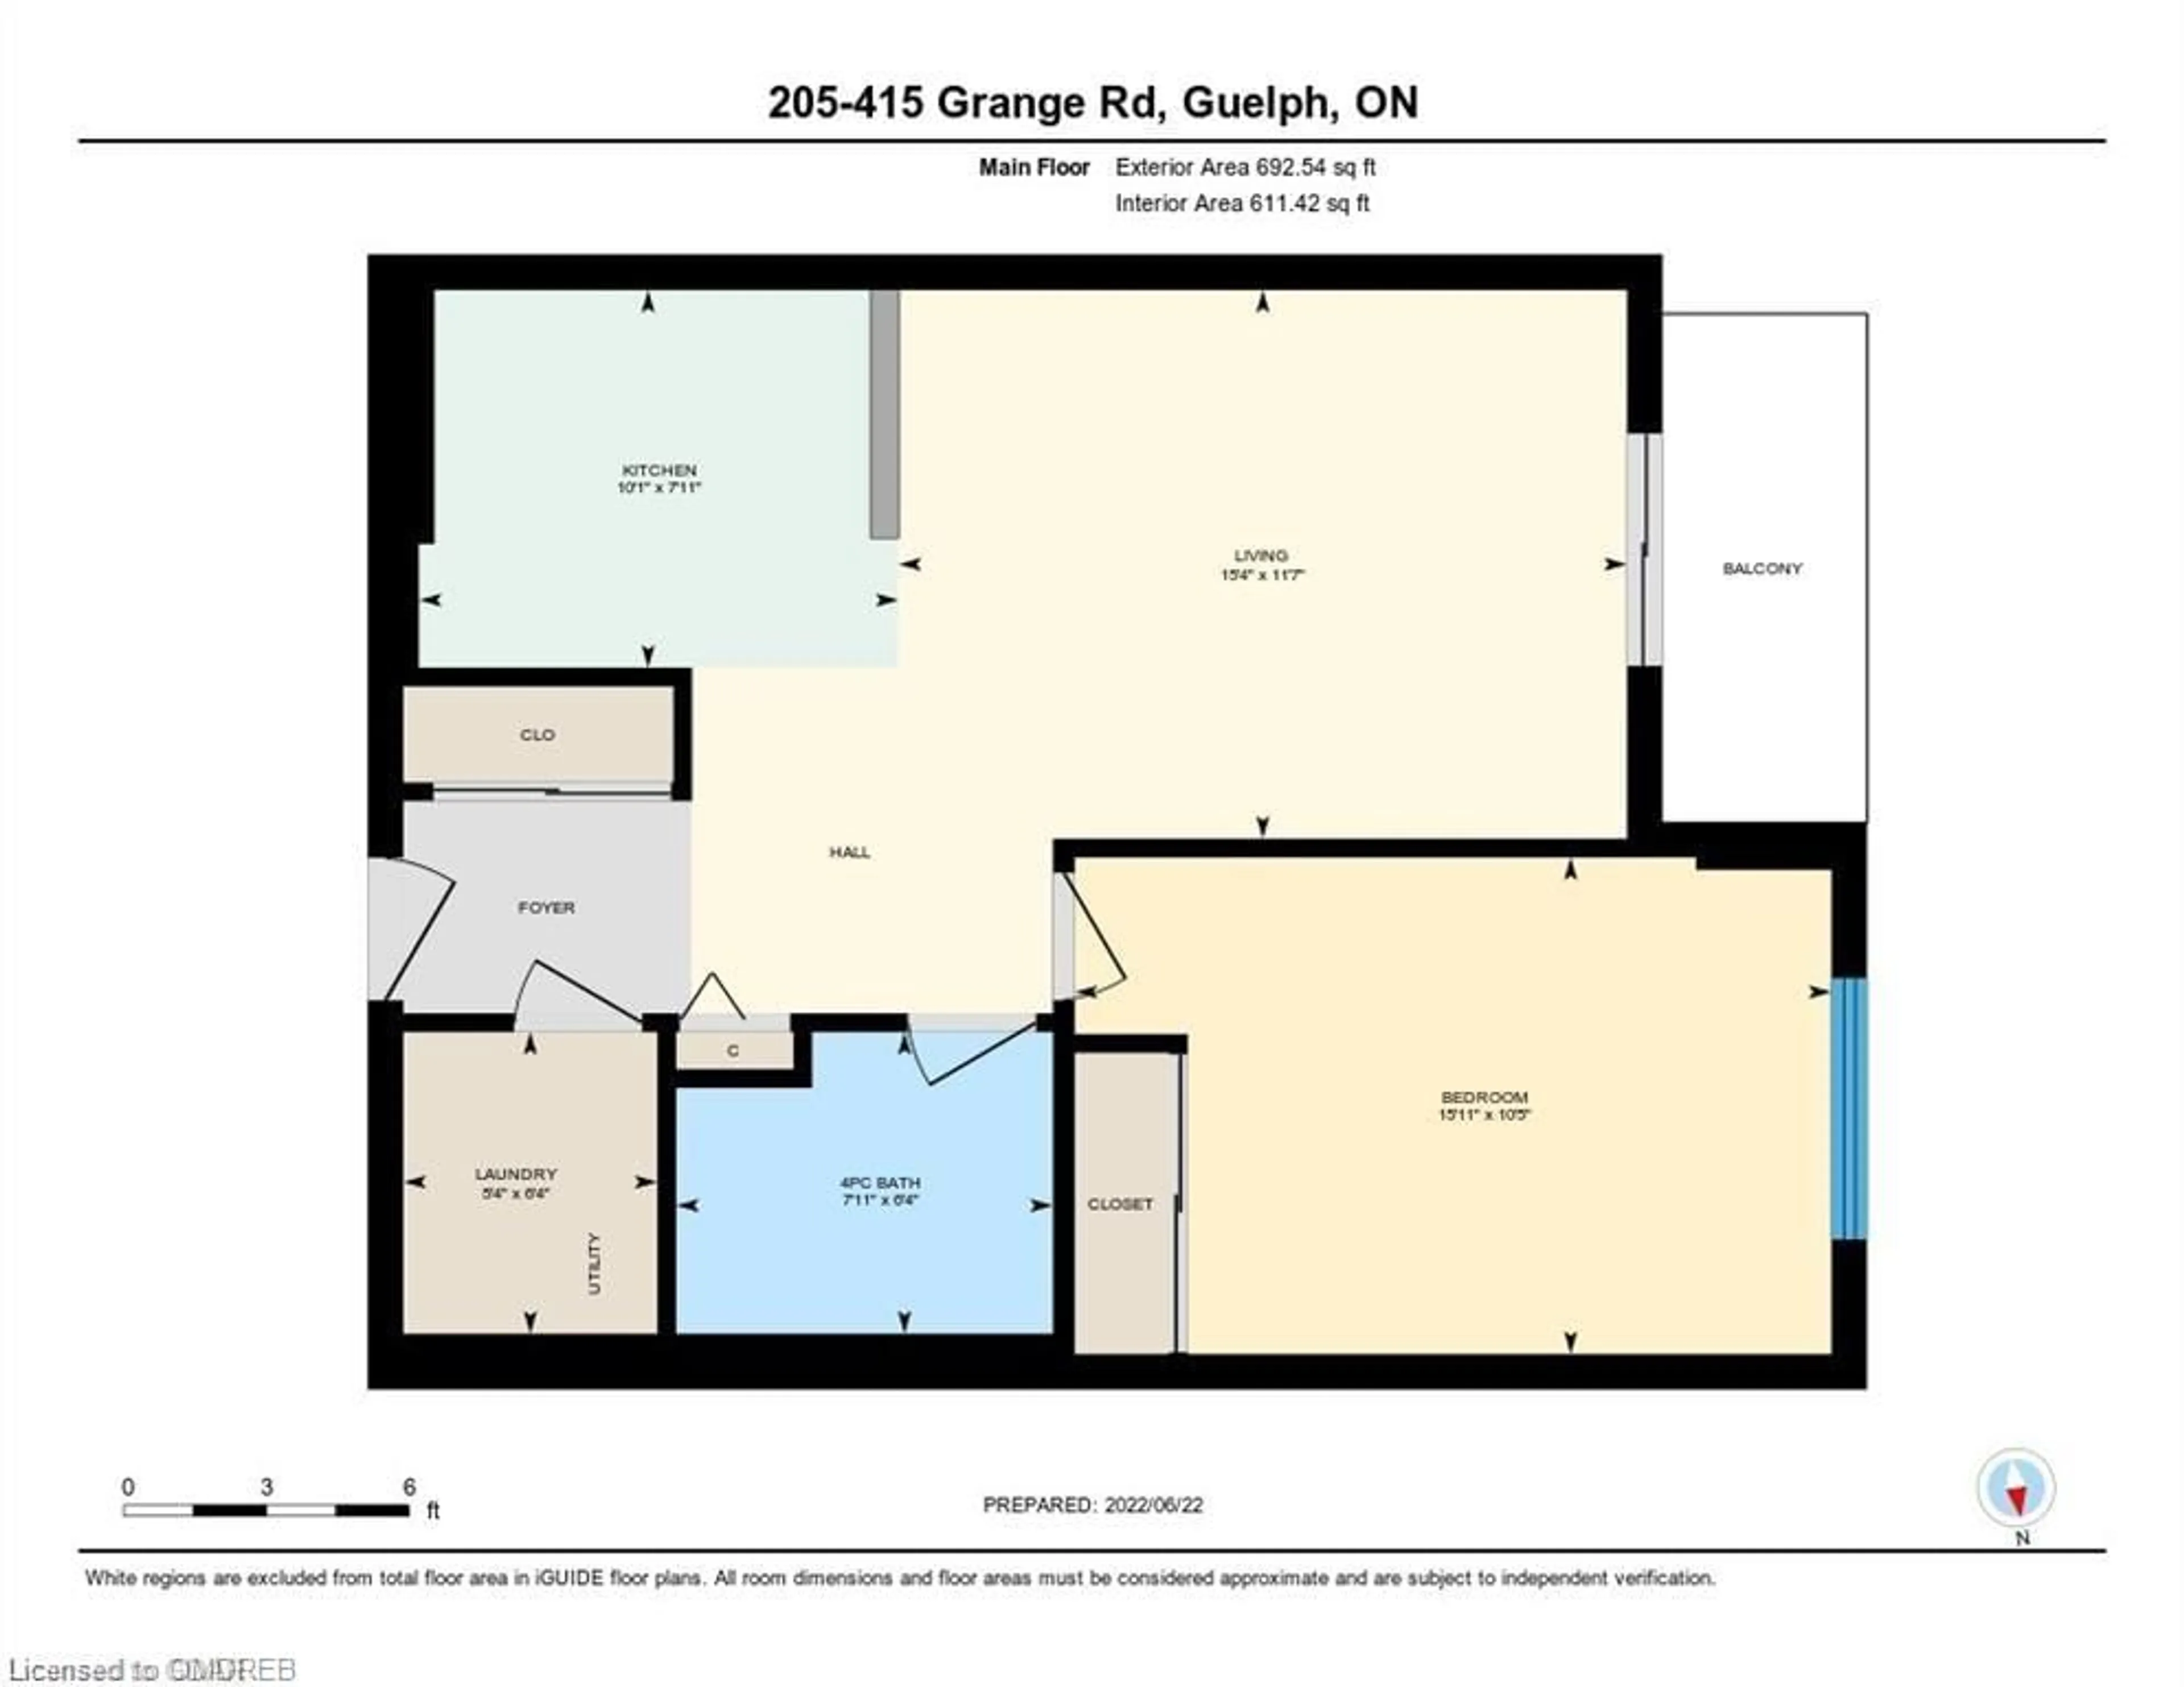 Floor plan for 415 Grange Rd #205, Guelph Ontario N1E 0C4